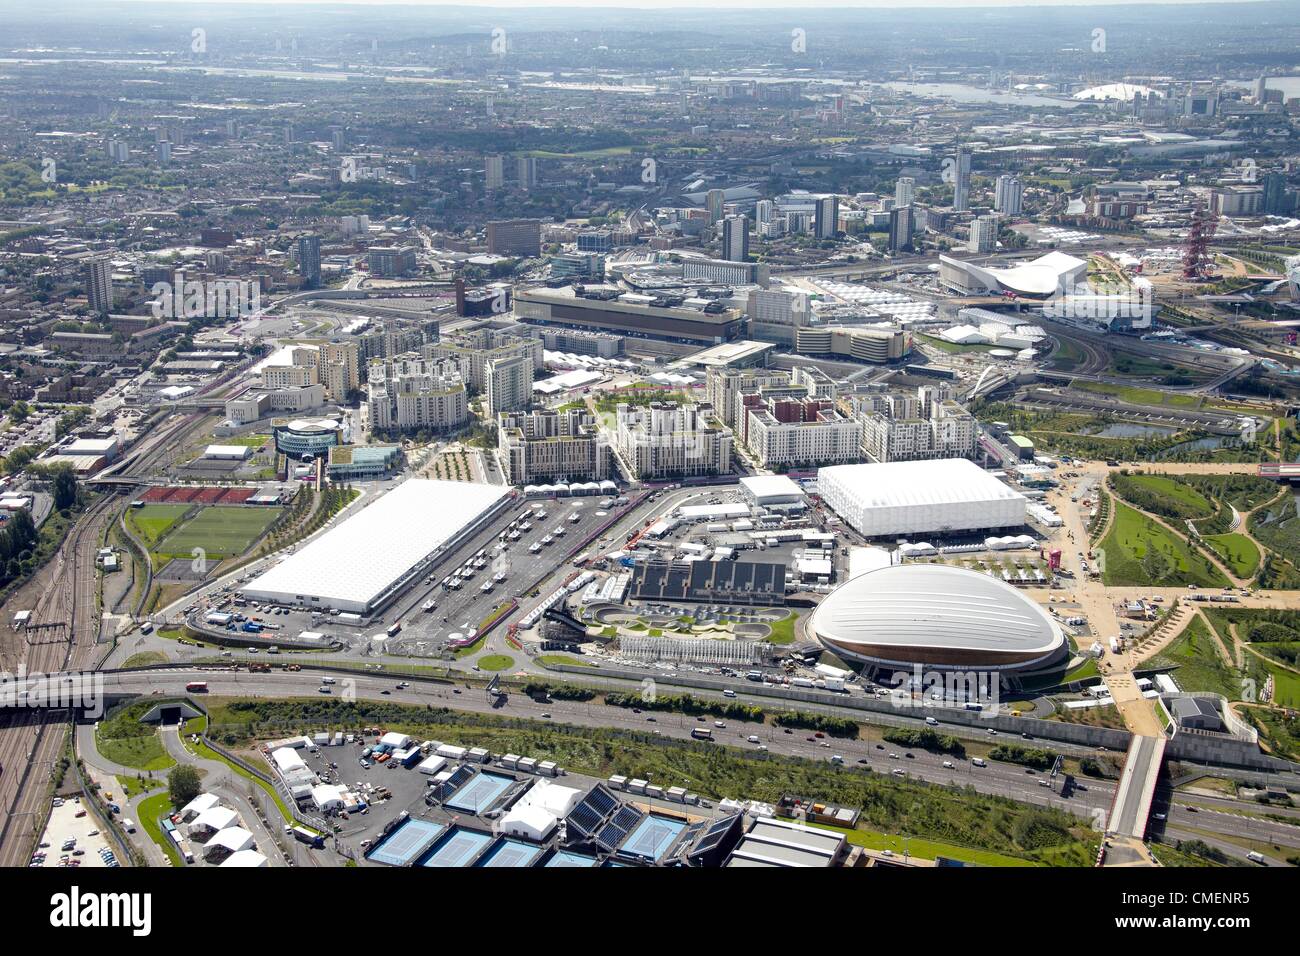 La fotografia aerea a sud-est del Parco Olimpico, con il velodromo, BMX via, Basket arena internazionale e centro di diffusione. Londra 2012 Sito olimpico, Stratford London Foto Stock